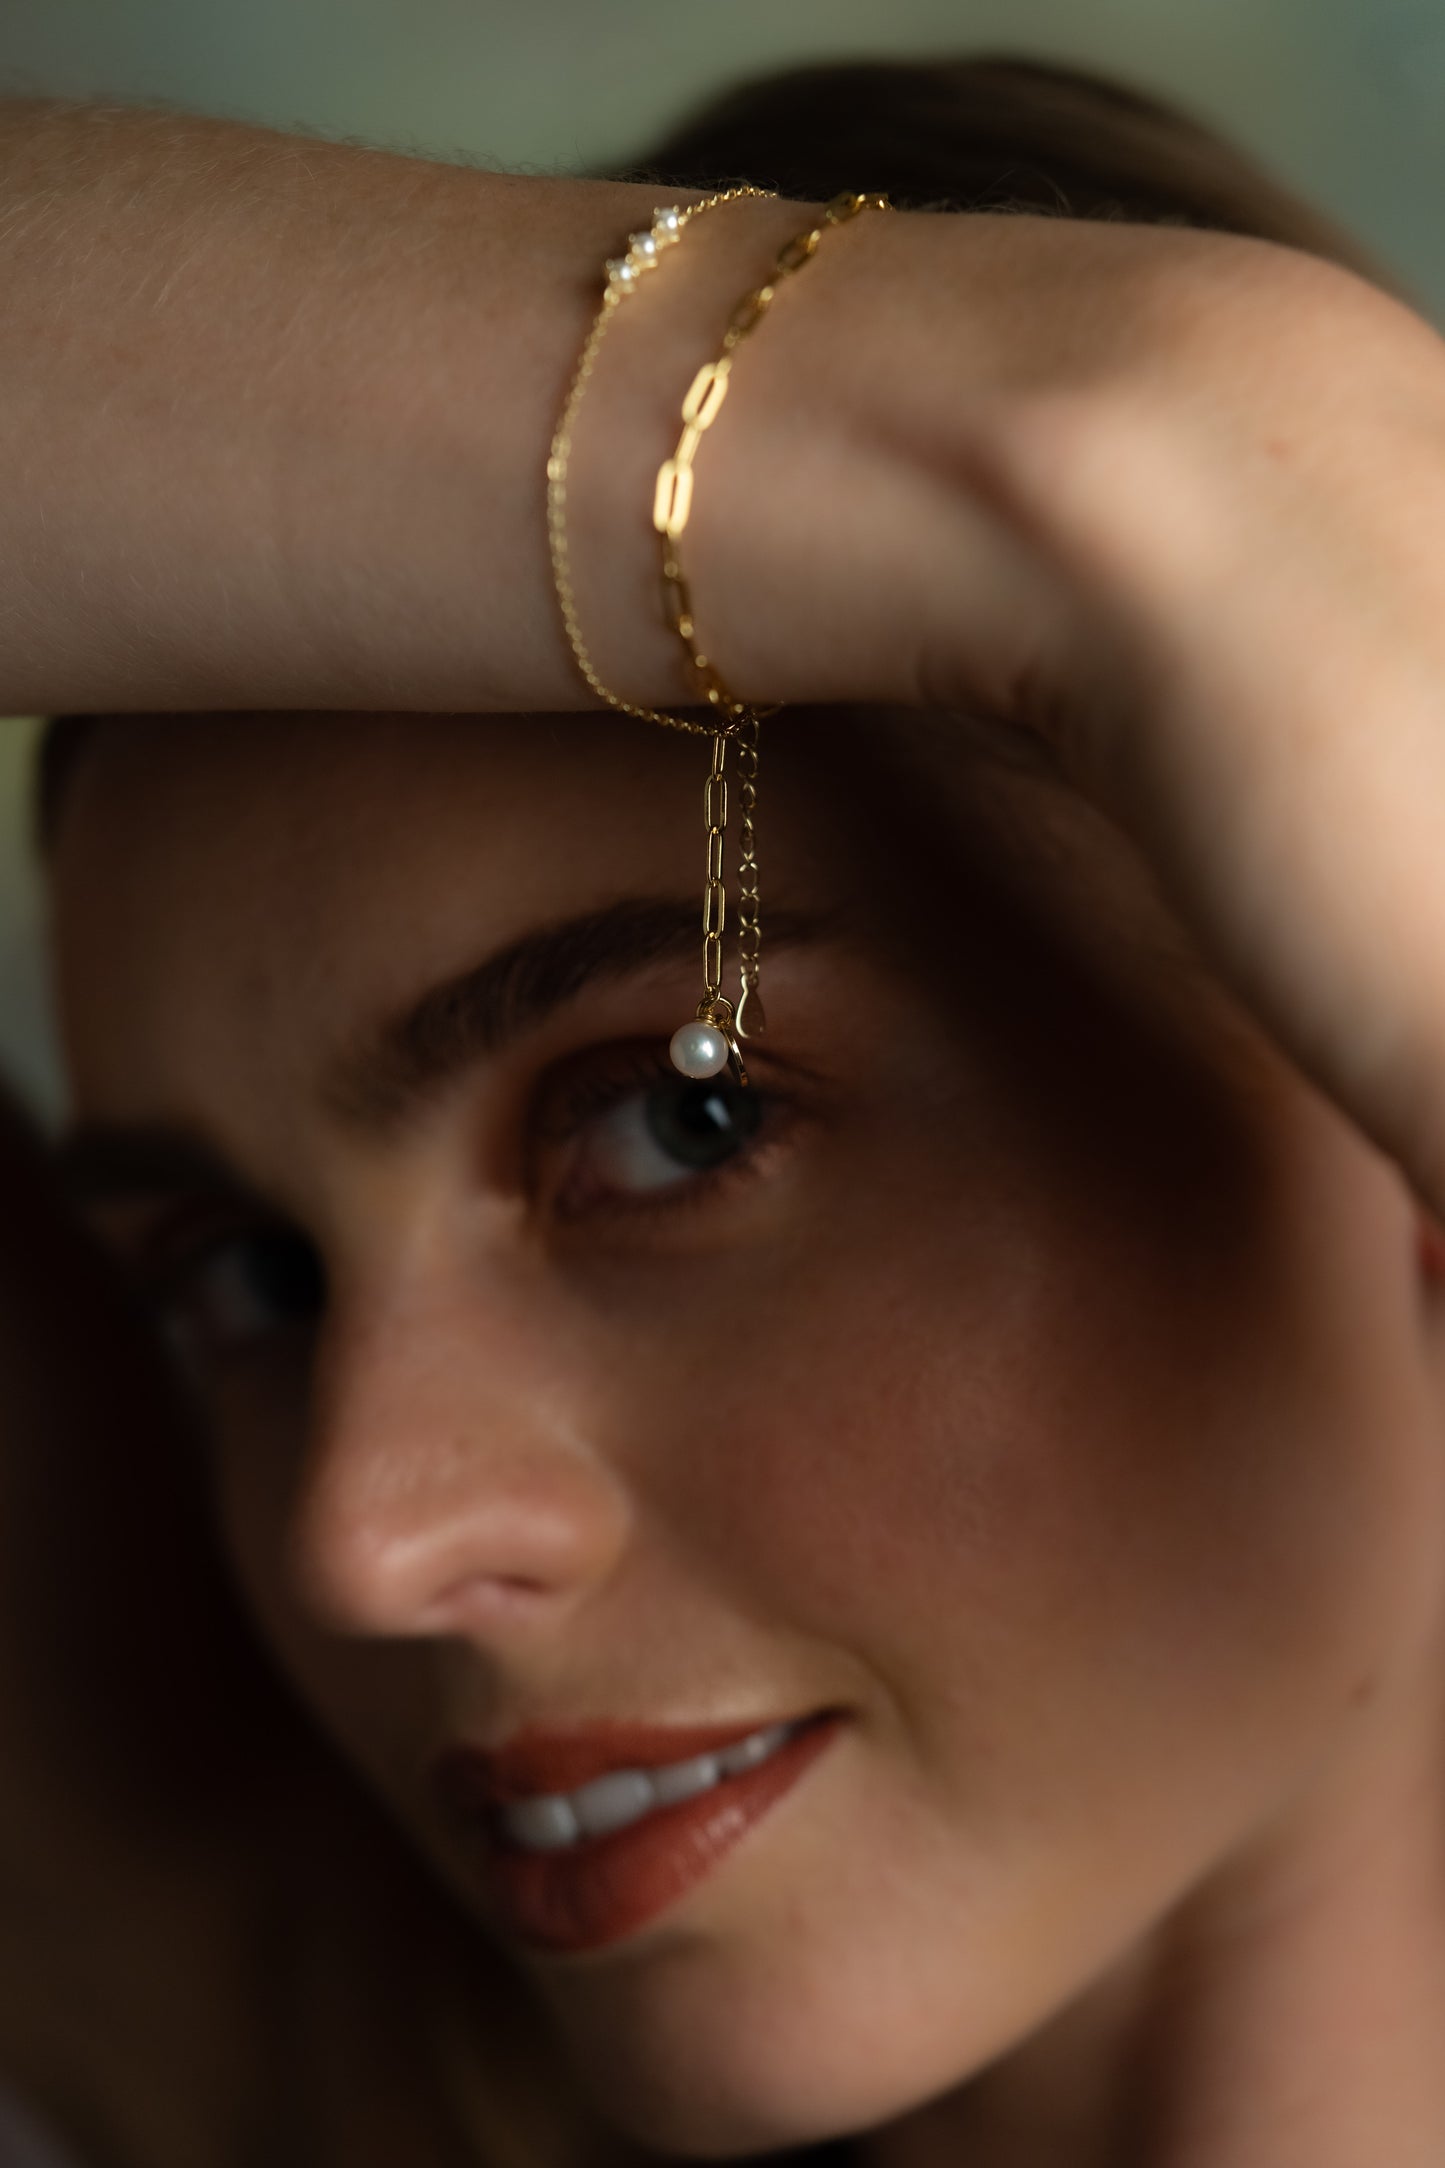 The Pearl Corsage 14ct Gold Vermeil Bracelet